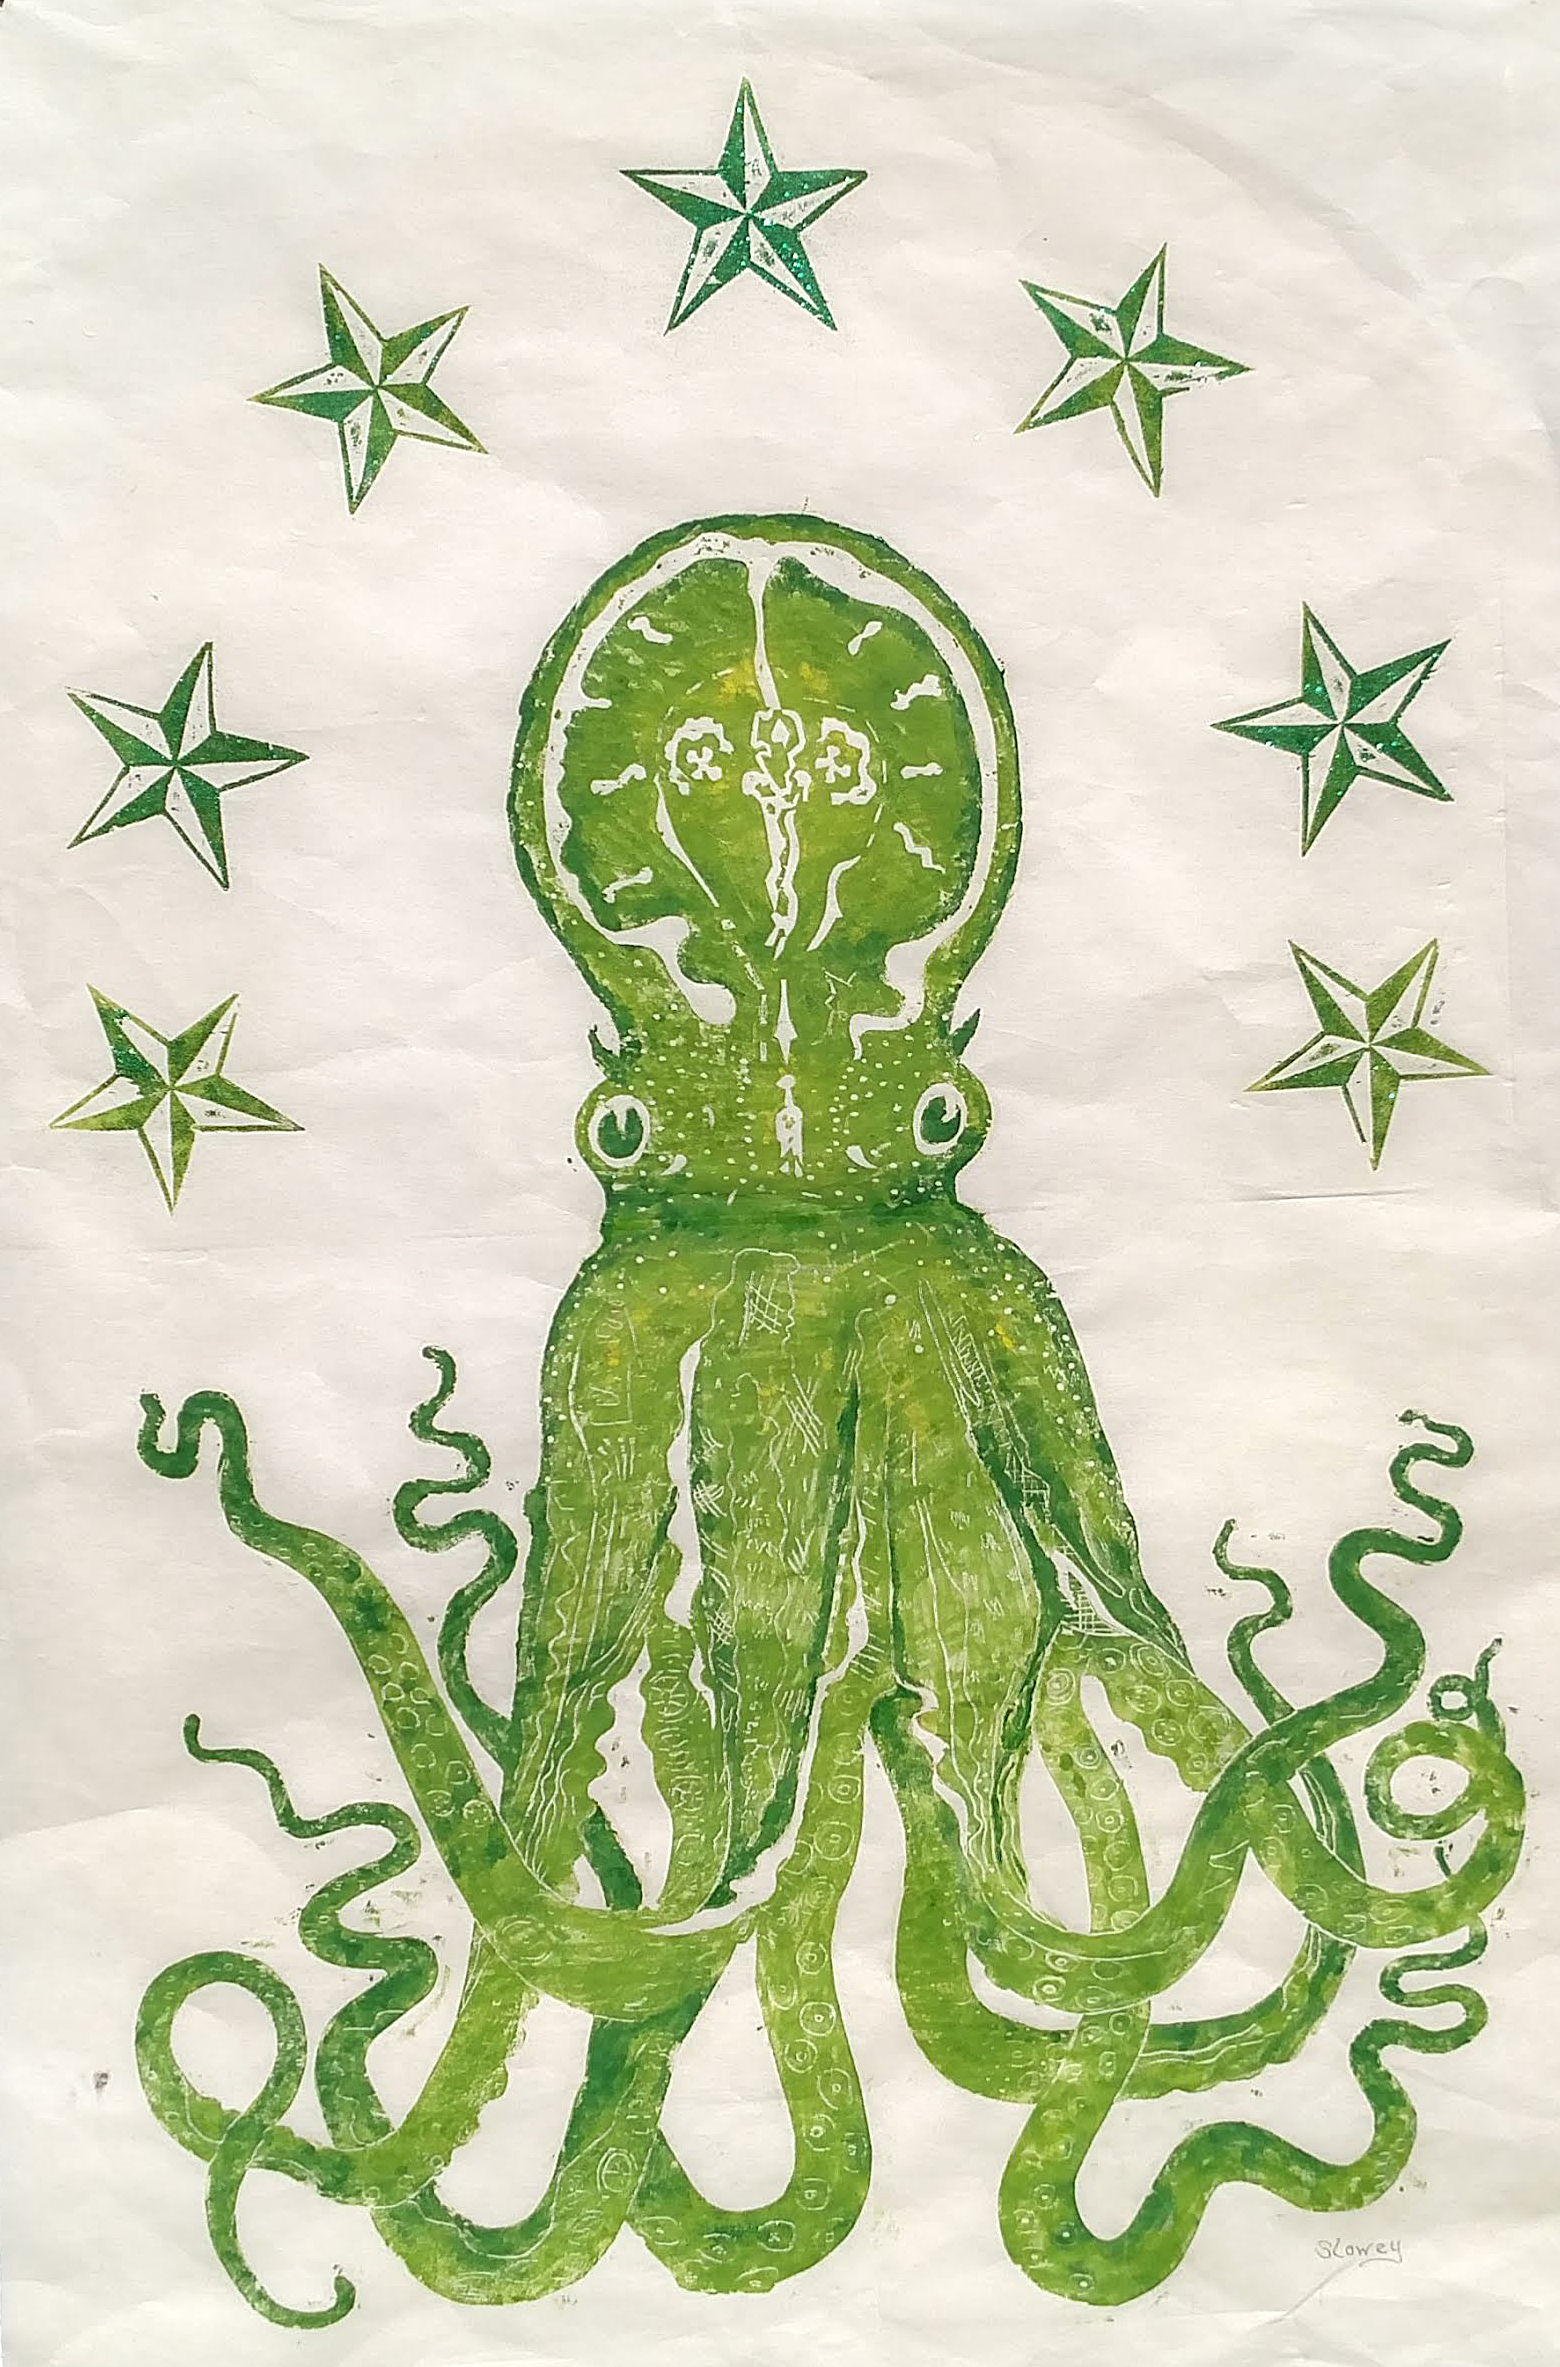 octopus Slowey woodcut green 36 x 24 in $250 2018.jpg